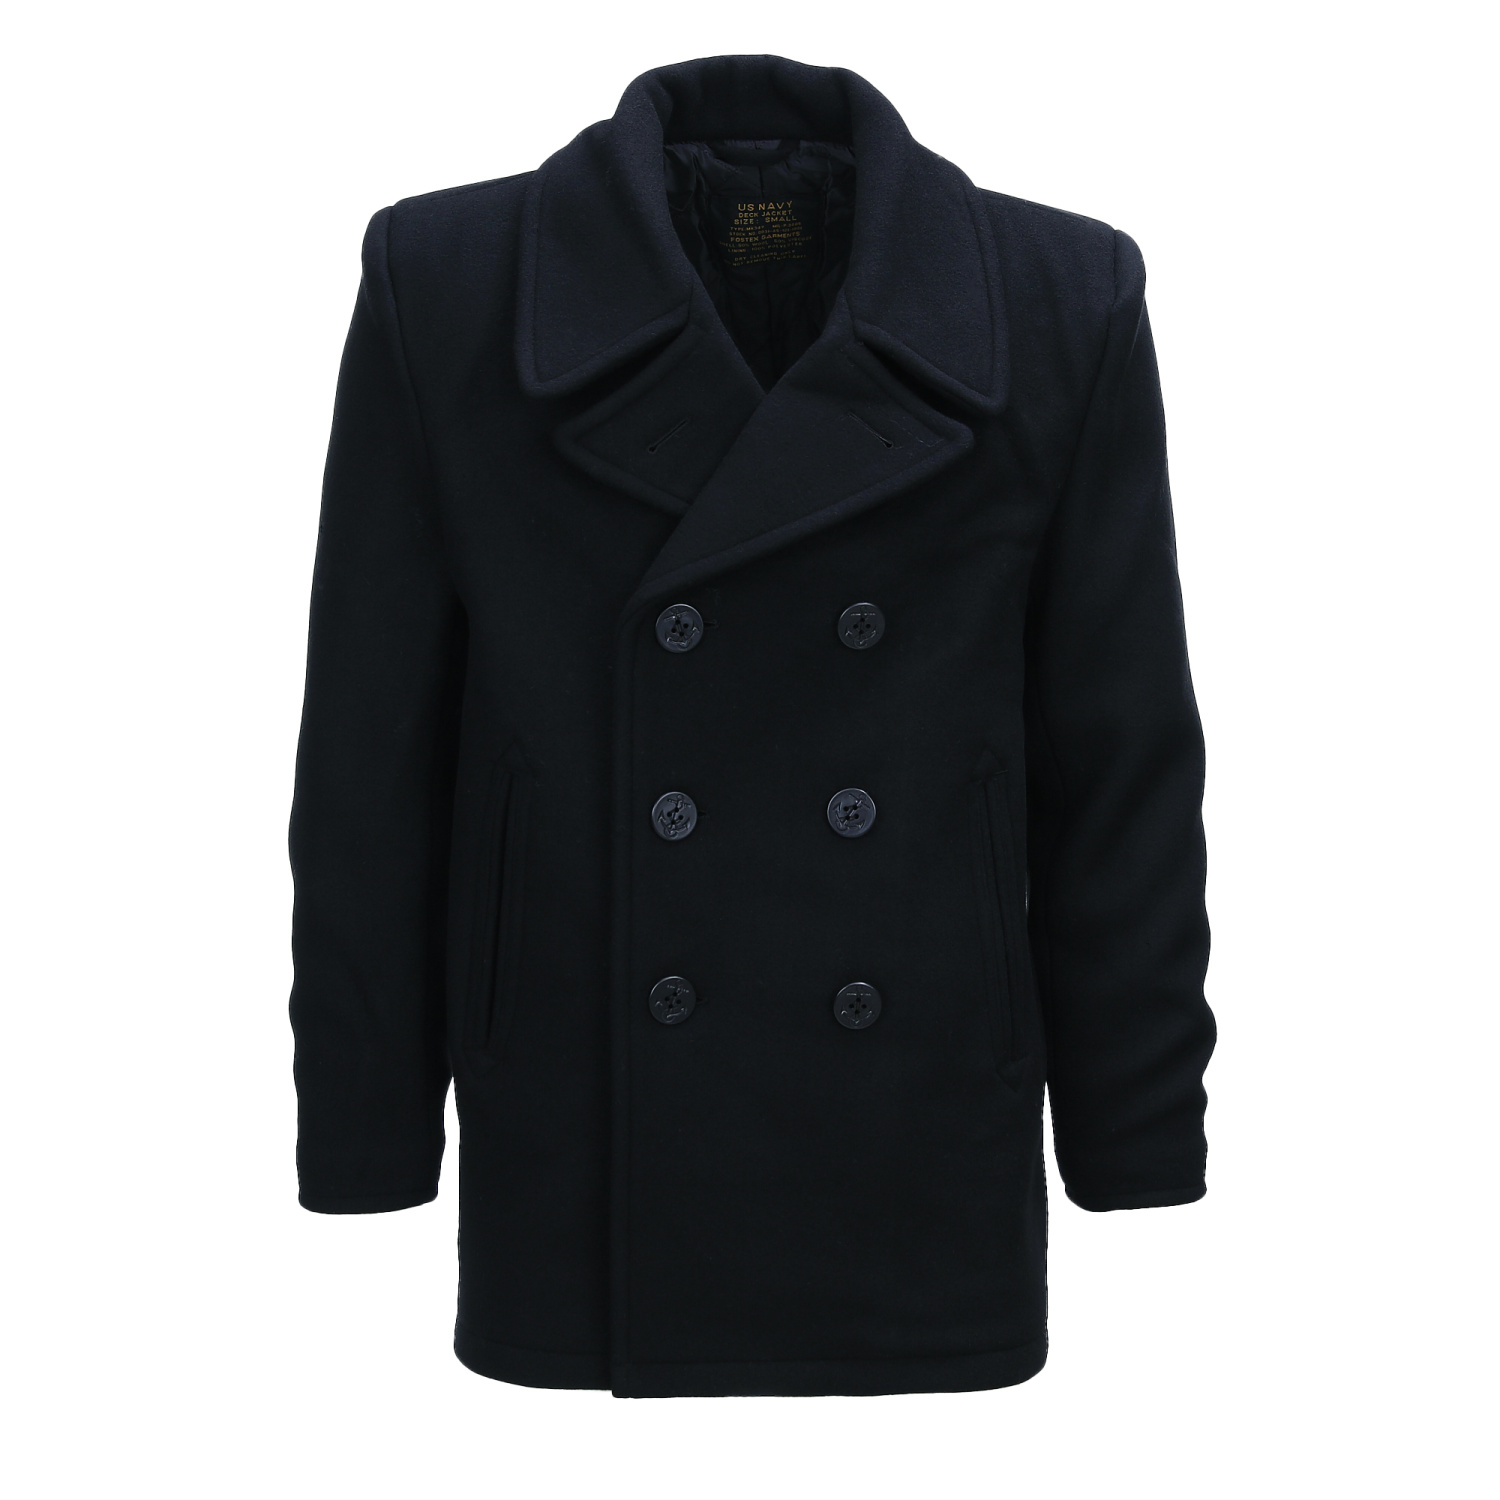 kabát Deck Jacket (Pea Coat) černý